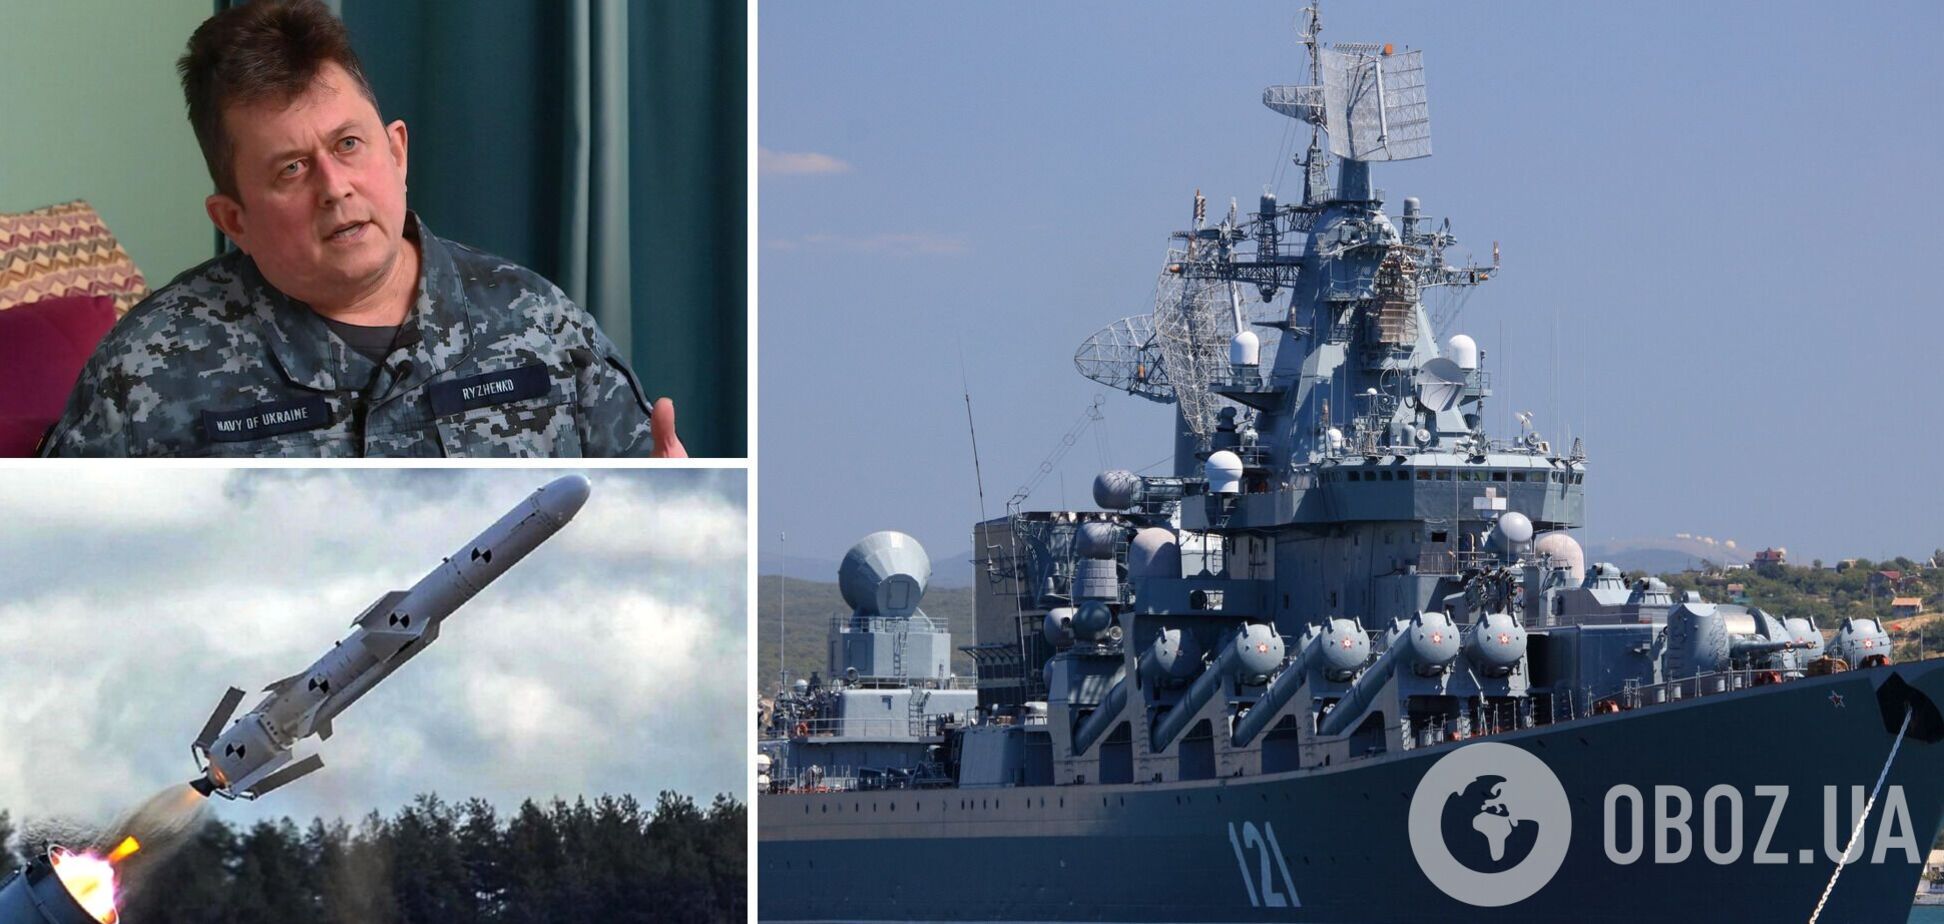 Рыженко: крейсер 'Москва' мог уничтожать до 12 целей одновременно, но что-то пошло не так. Интервью